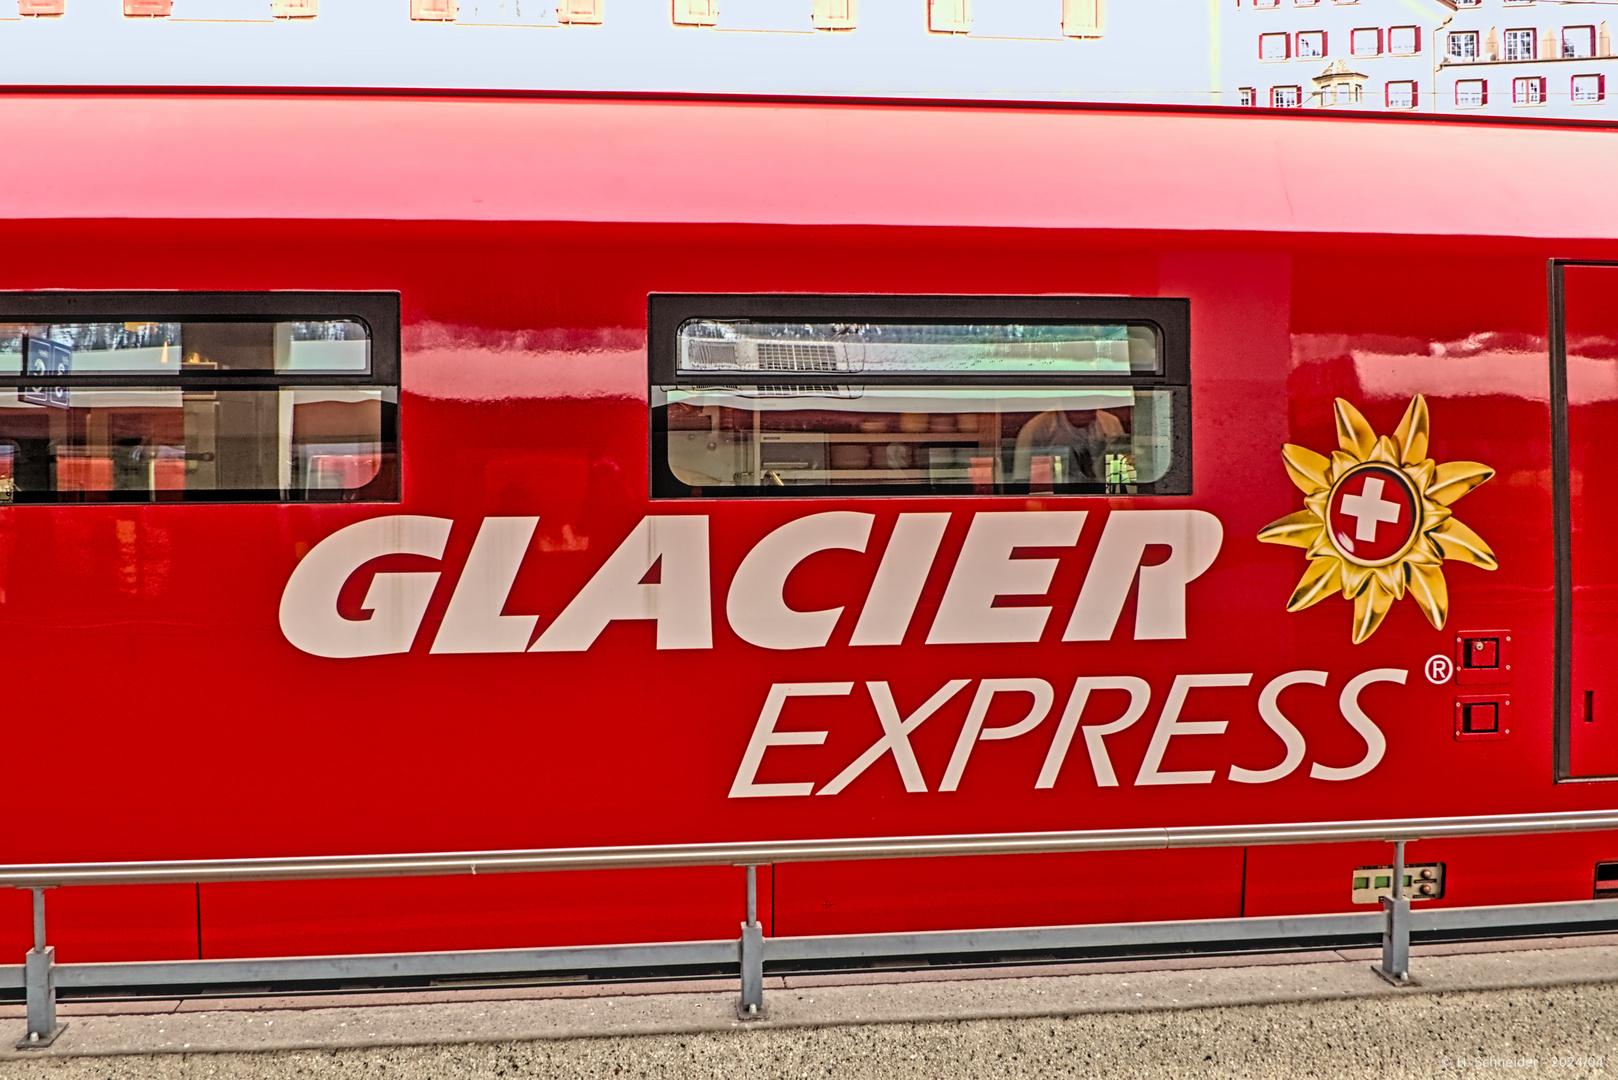 Speisewagen des Glacier Express